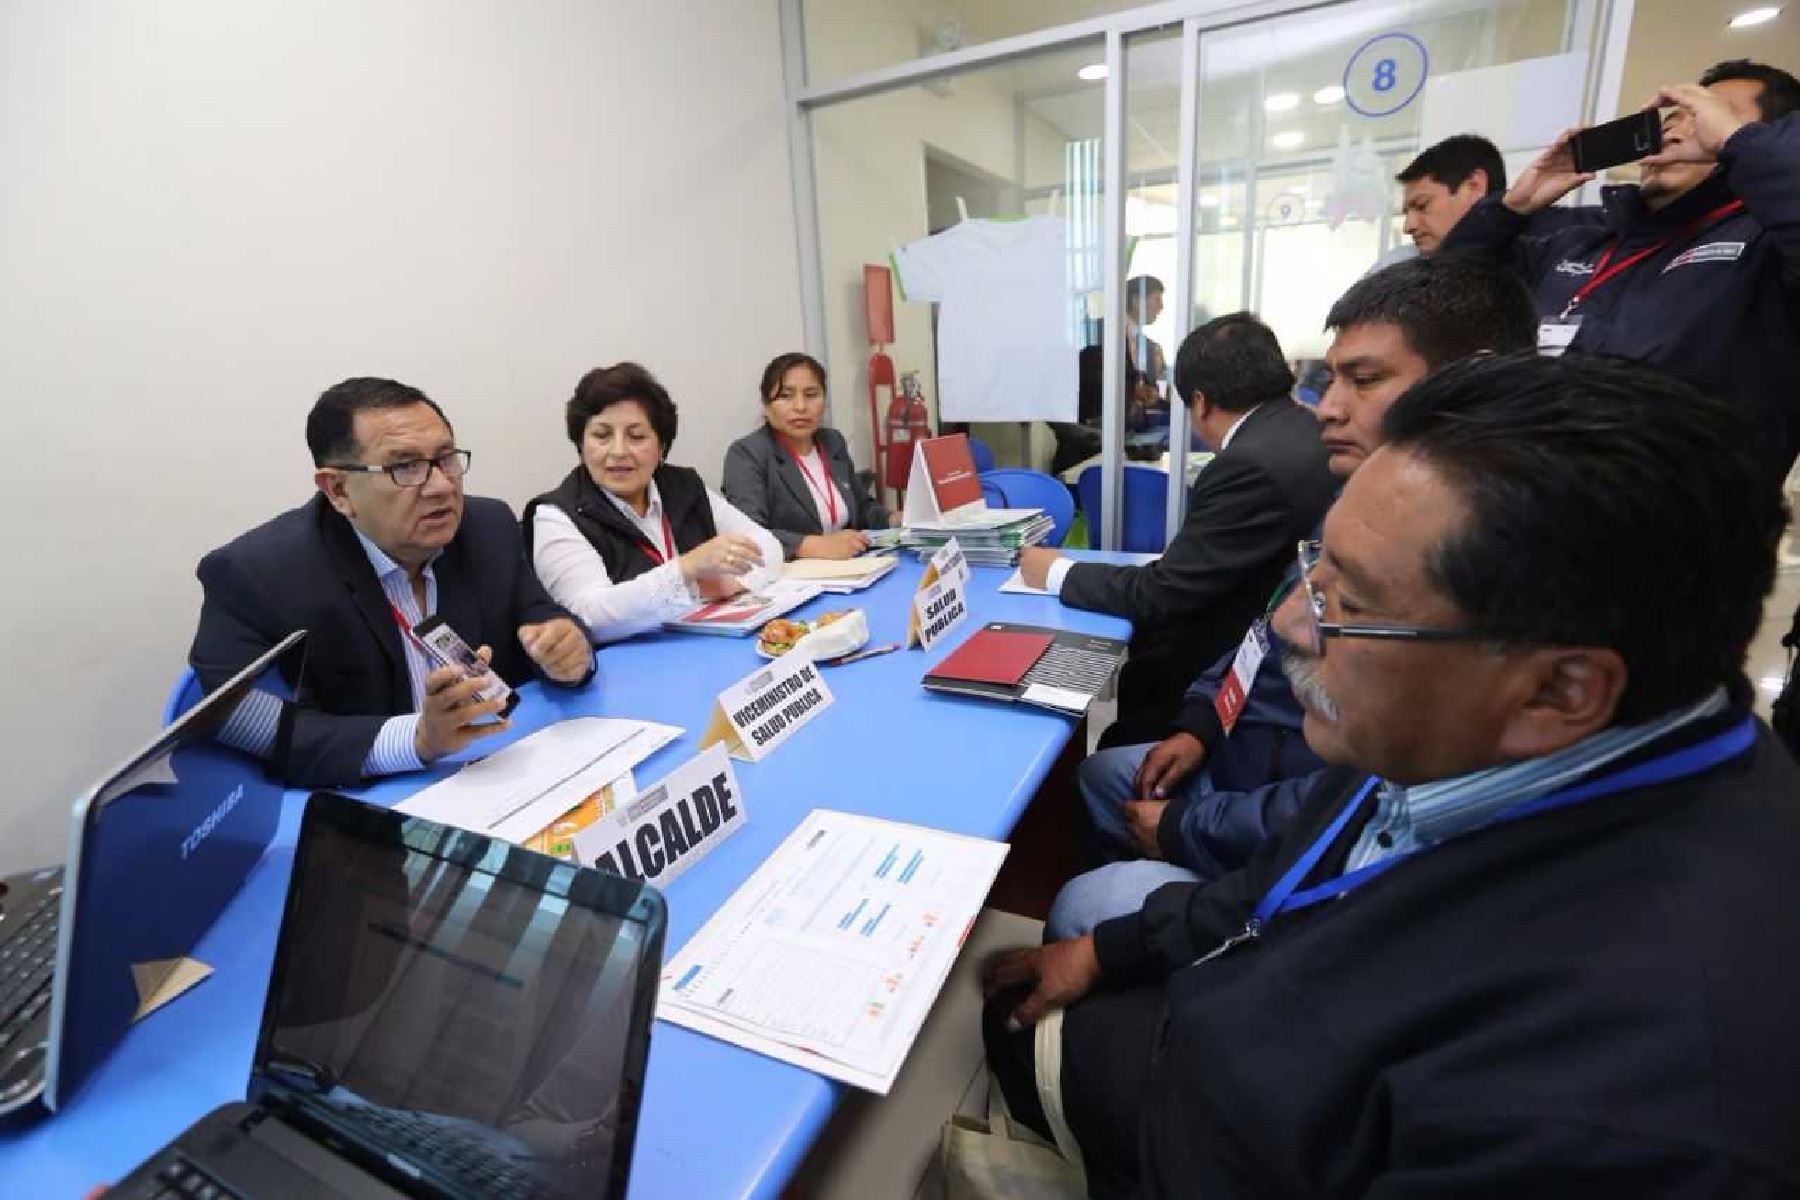 viceministro de Salud Pública, Juan Arroyo,, exhortó a los alcaldes a ser partícipes de las estrategias sanitarias para fortalecer la lucha frontal contra la anemia y desnutrición crónica infantil